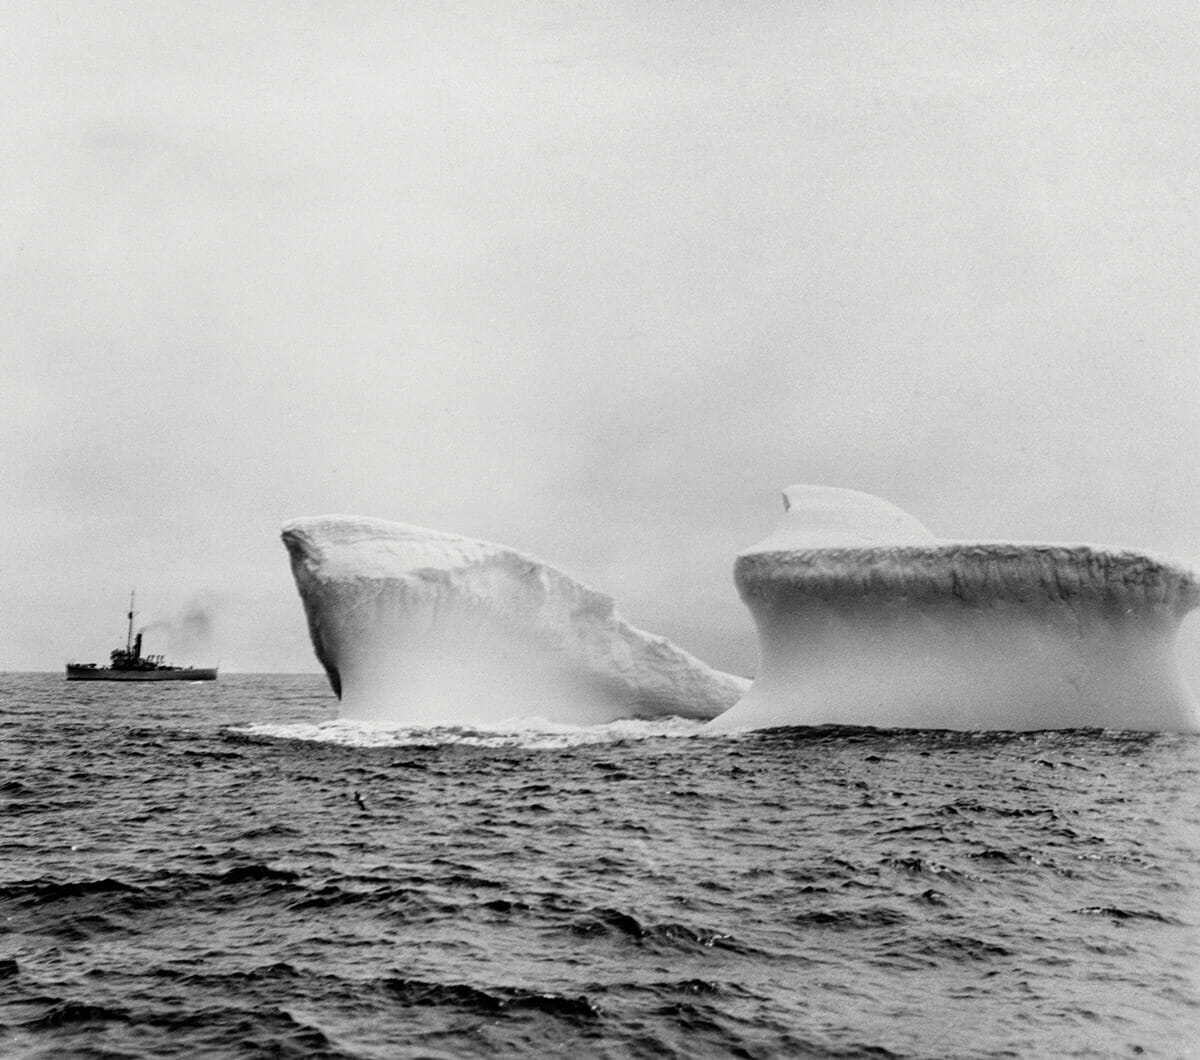 Ship sailing past iceberg in Antarctic waters.